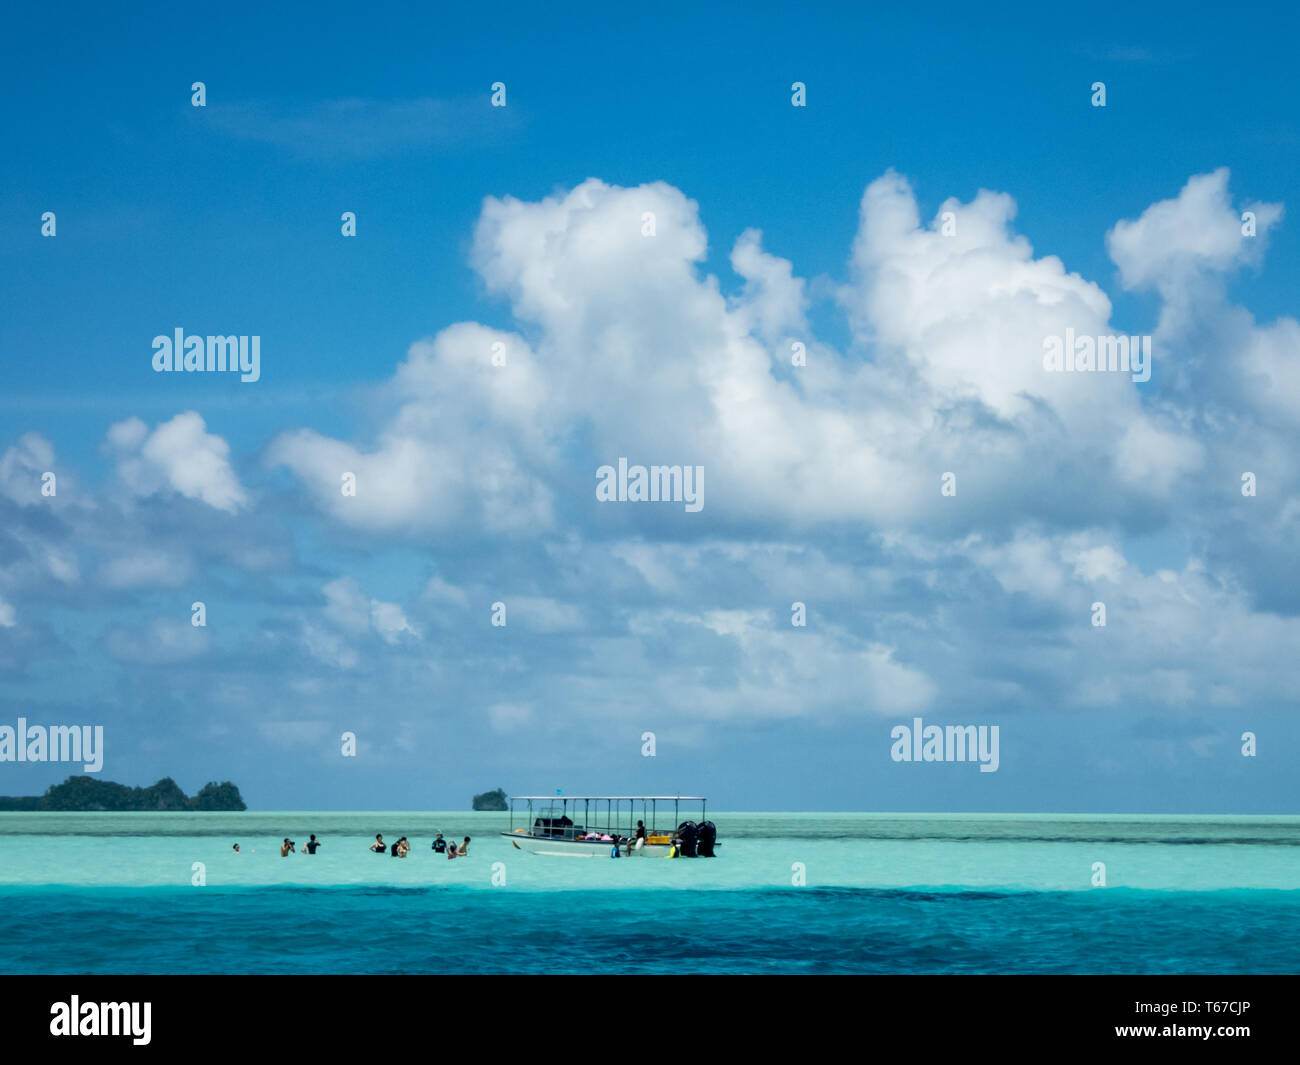 Les passagers du bateau d'apprécier nager dans les eaux tropicales turquoise Banque D'Images